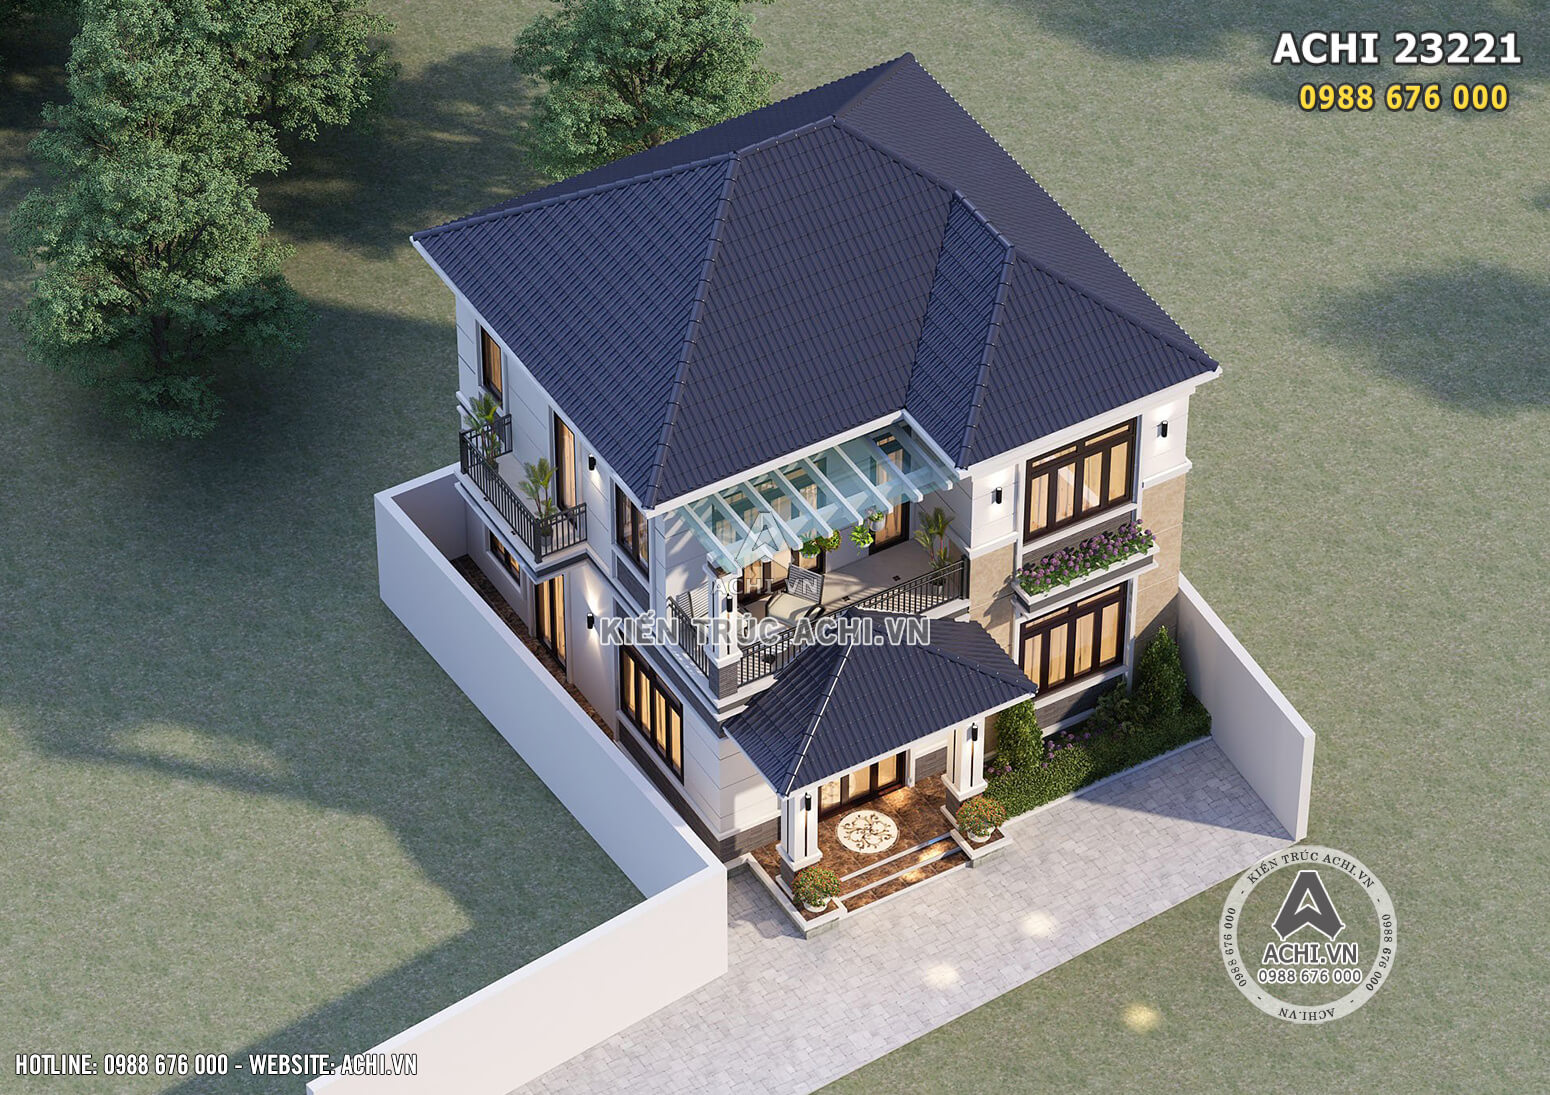 Mẫu thiết kế nhà mái nhật 2 tầng đẹp 80m2 kiến trúc hiện đại - Mã số: ACHI 23221